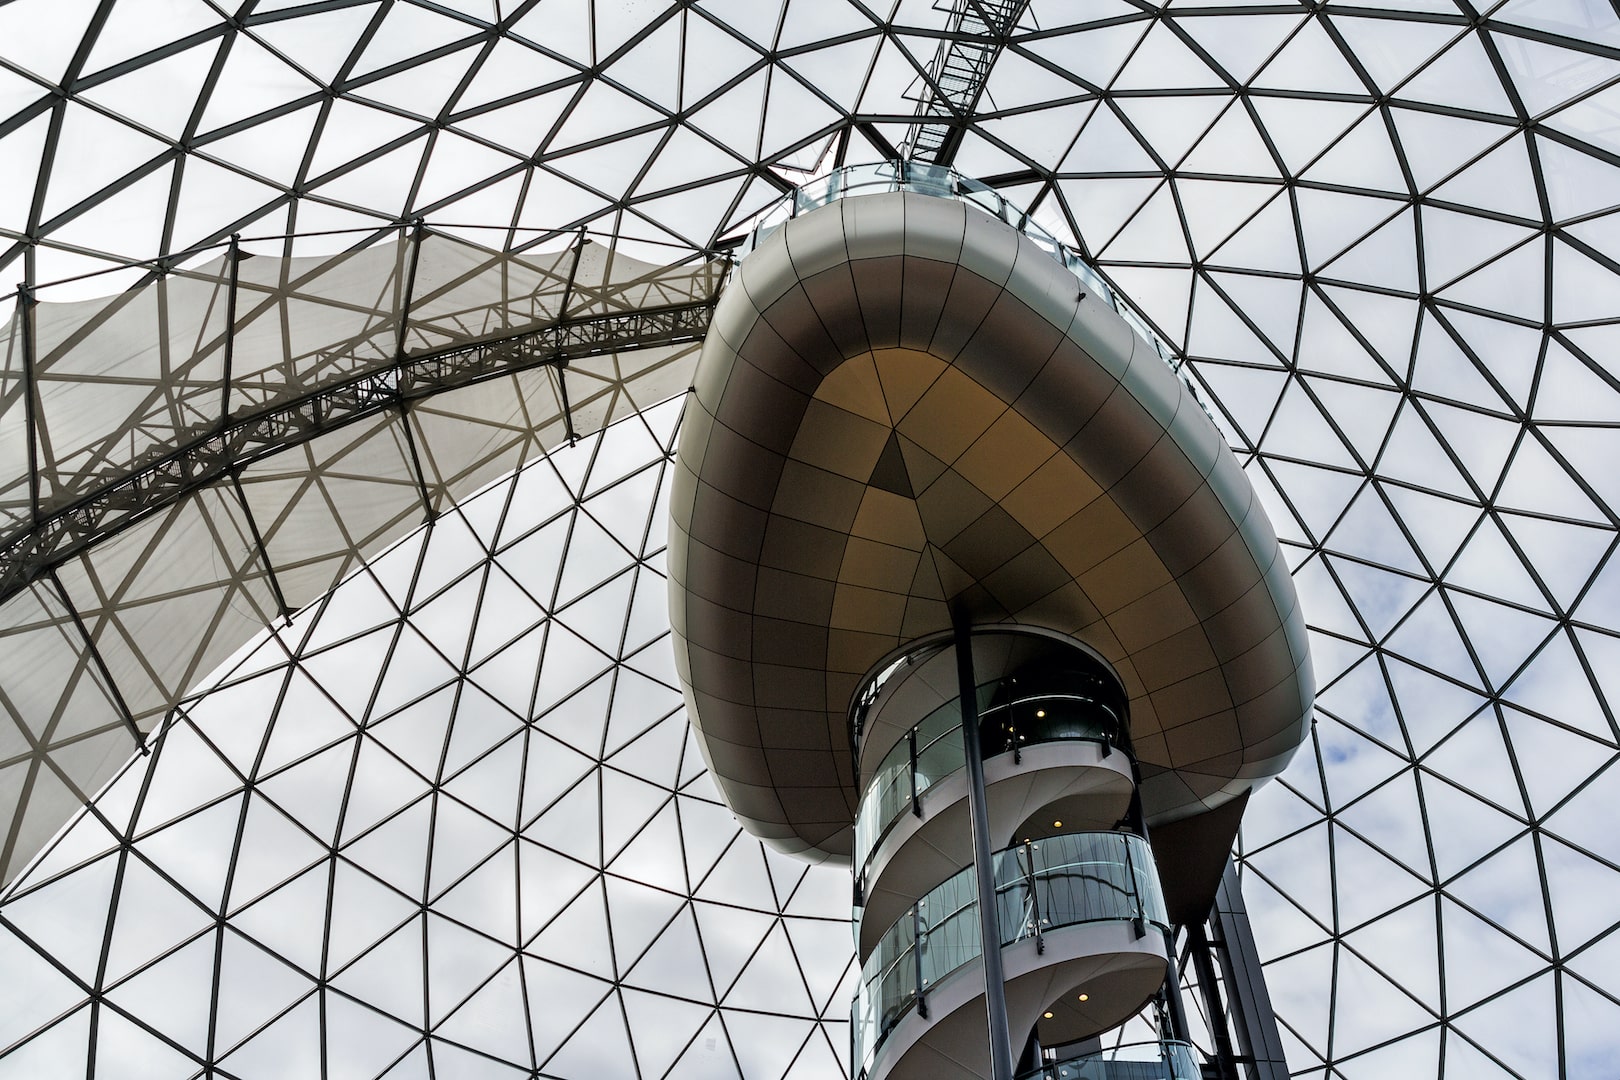 Конструкция из стекла и стали купола торгового центра Victoria Square в центре Белфаста - одного из крупнейших торговых центров в городе